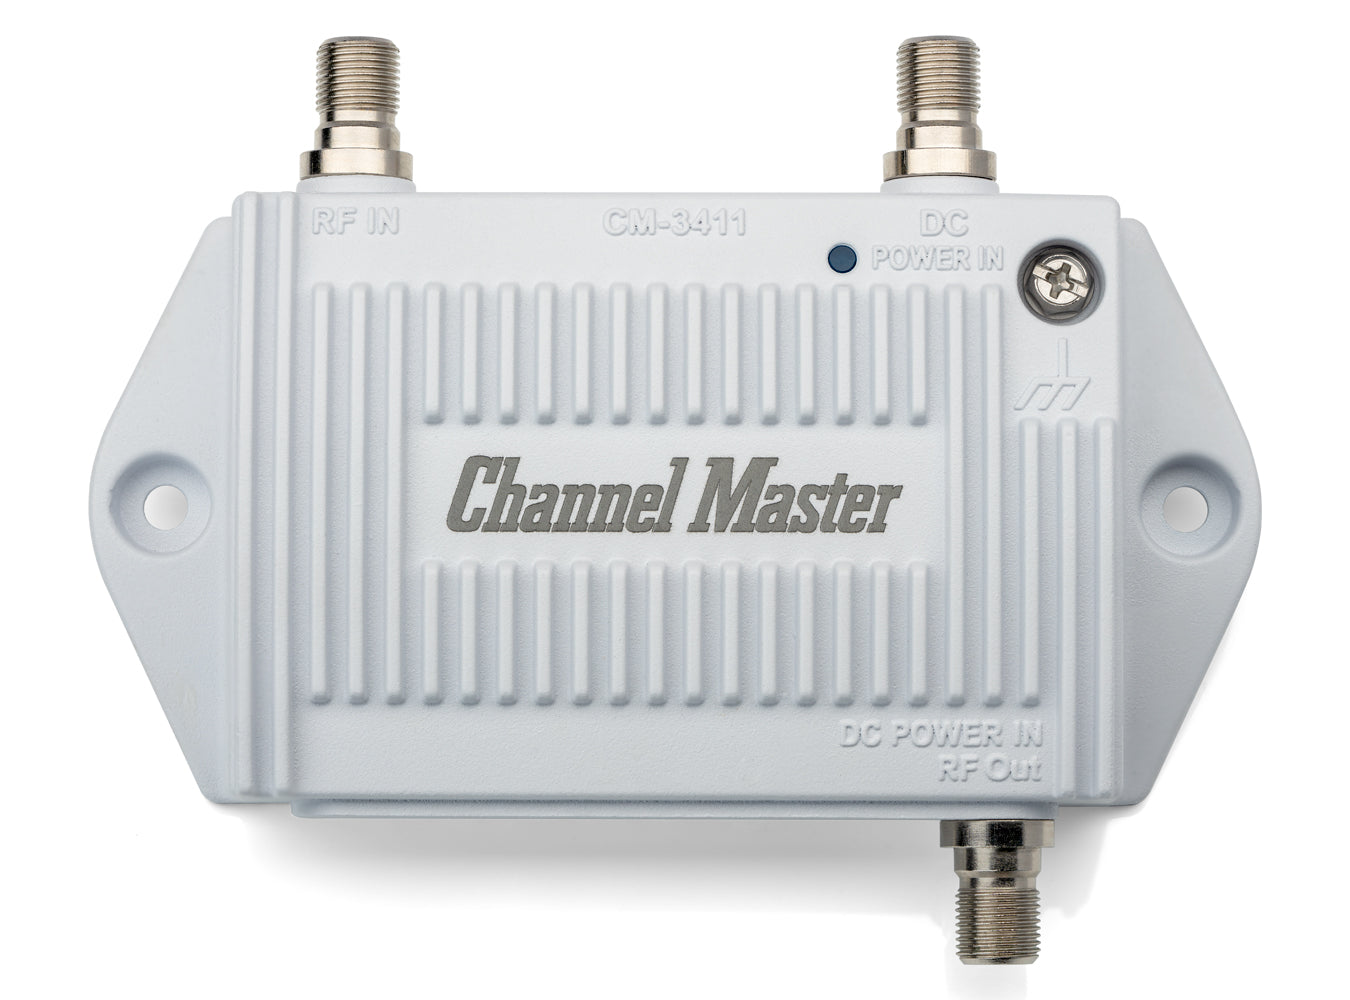 FM Antenna – Channel Master